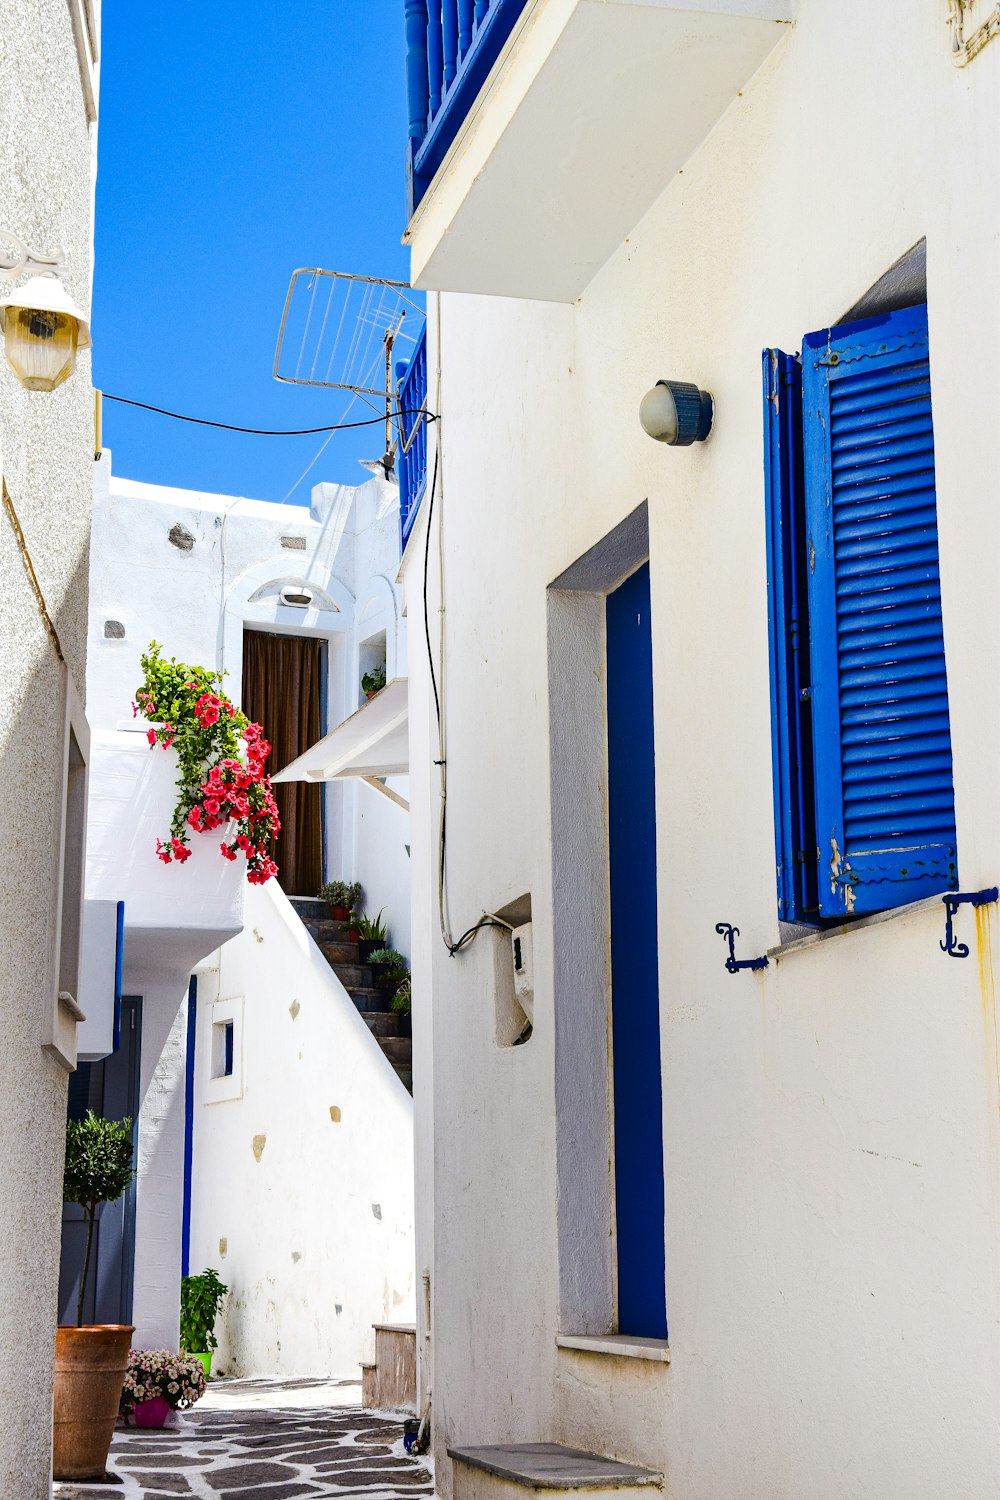 Un callejón estrecho con persianas azules y flores